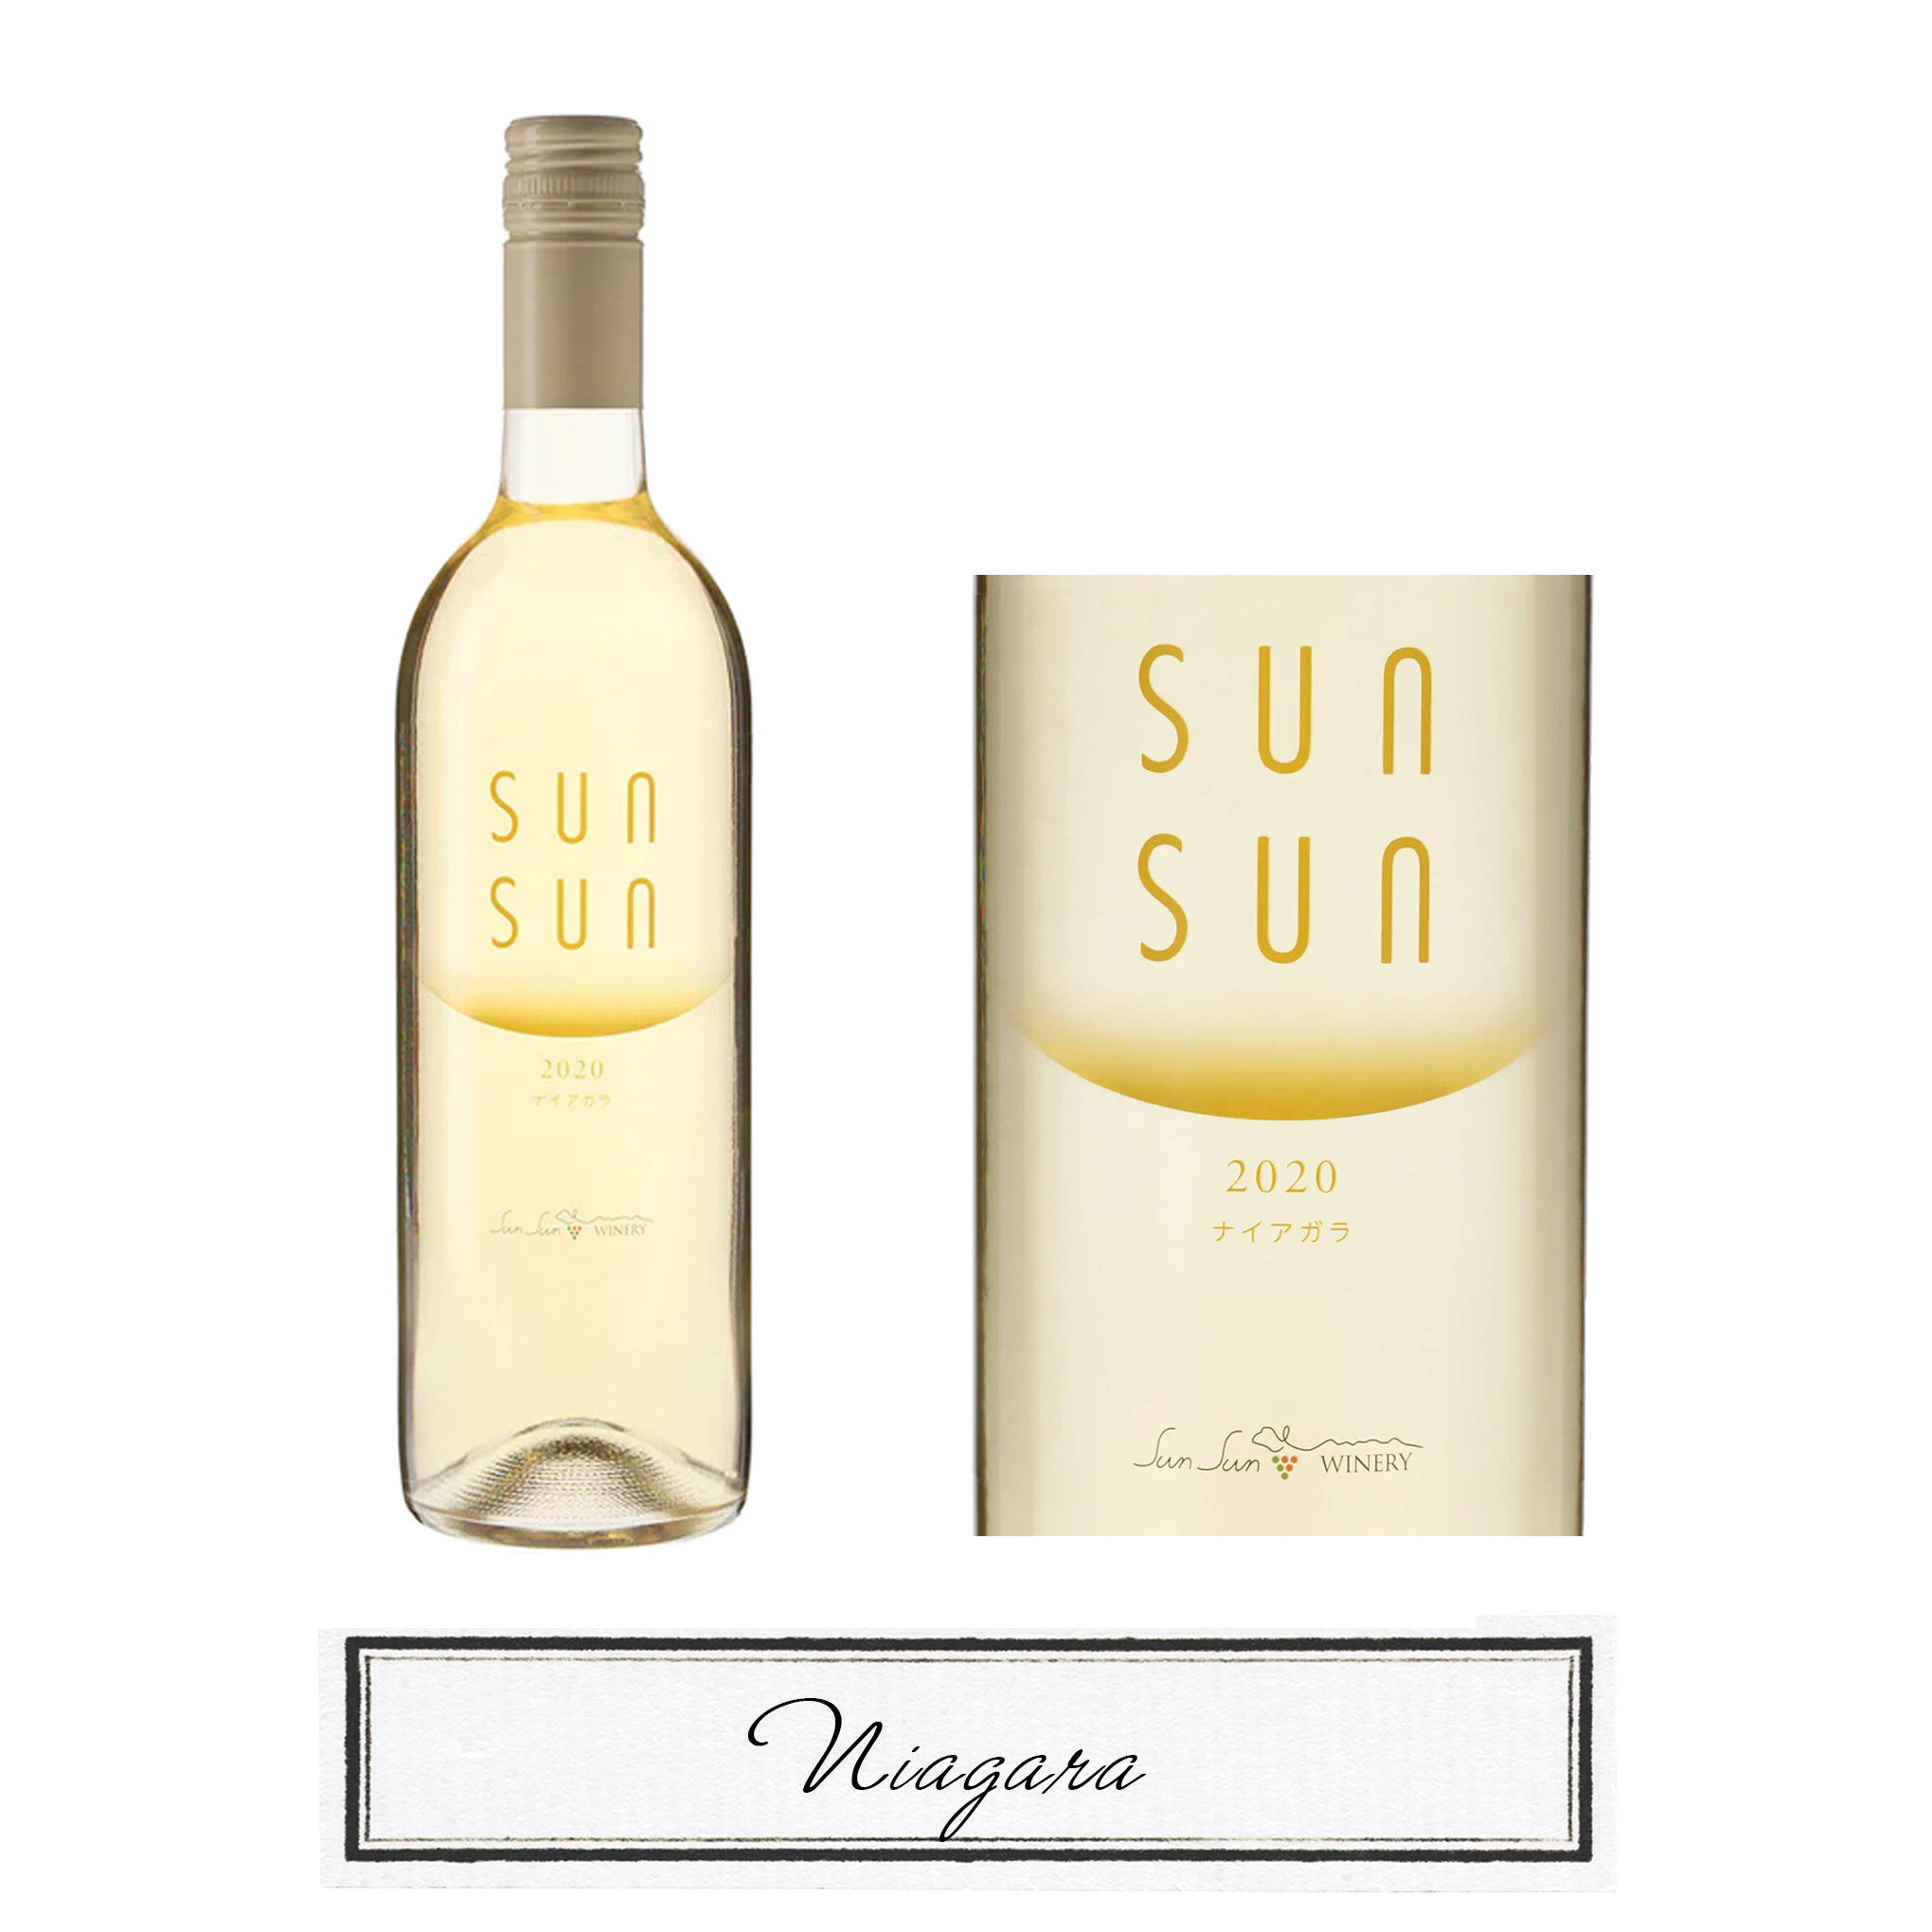 マスカットのような甘く華やかな「ナイアガラ」の香りが心地よい、白ワイン『サンサンワイナリー/サンサン ナイアガラ 2020』。